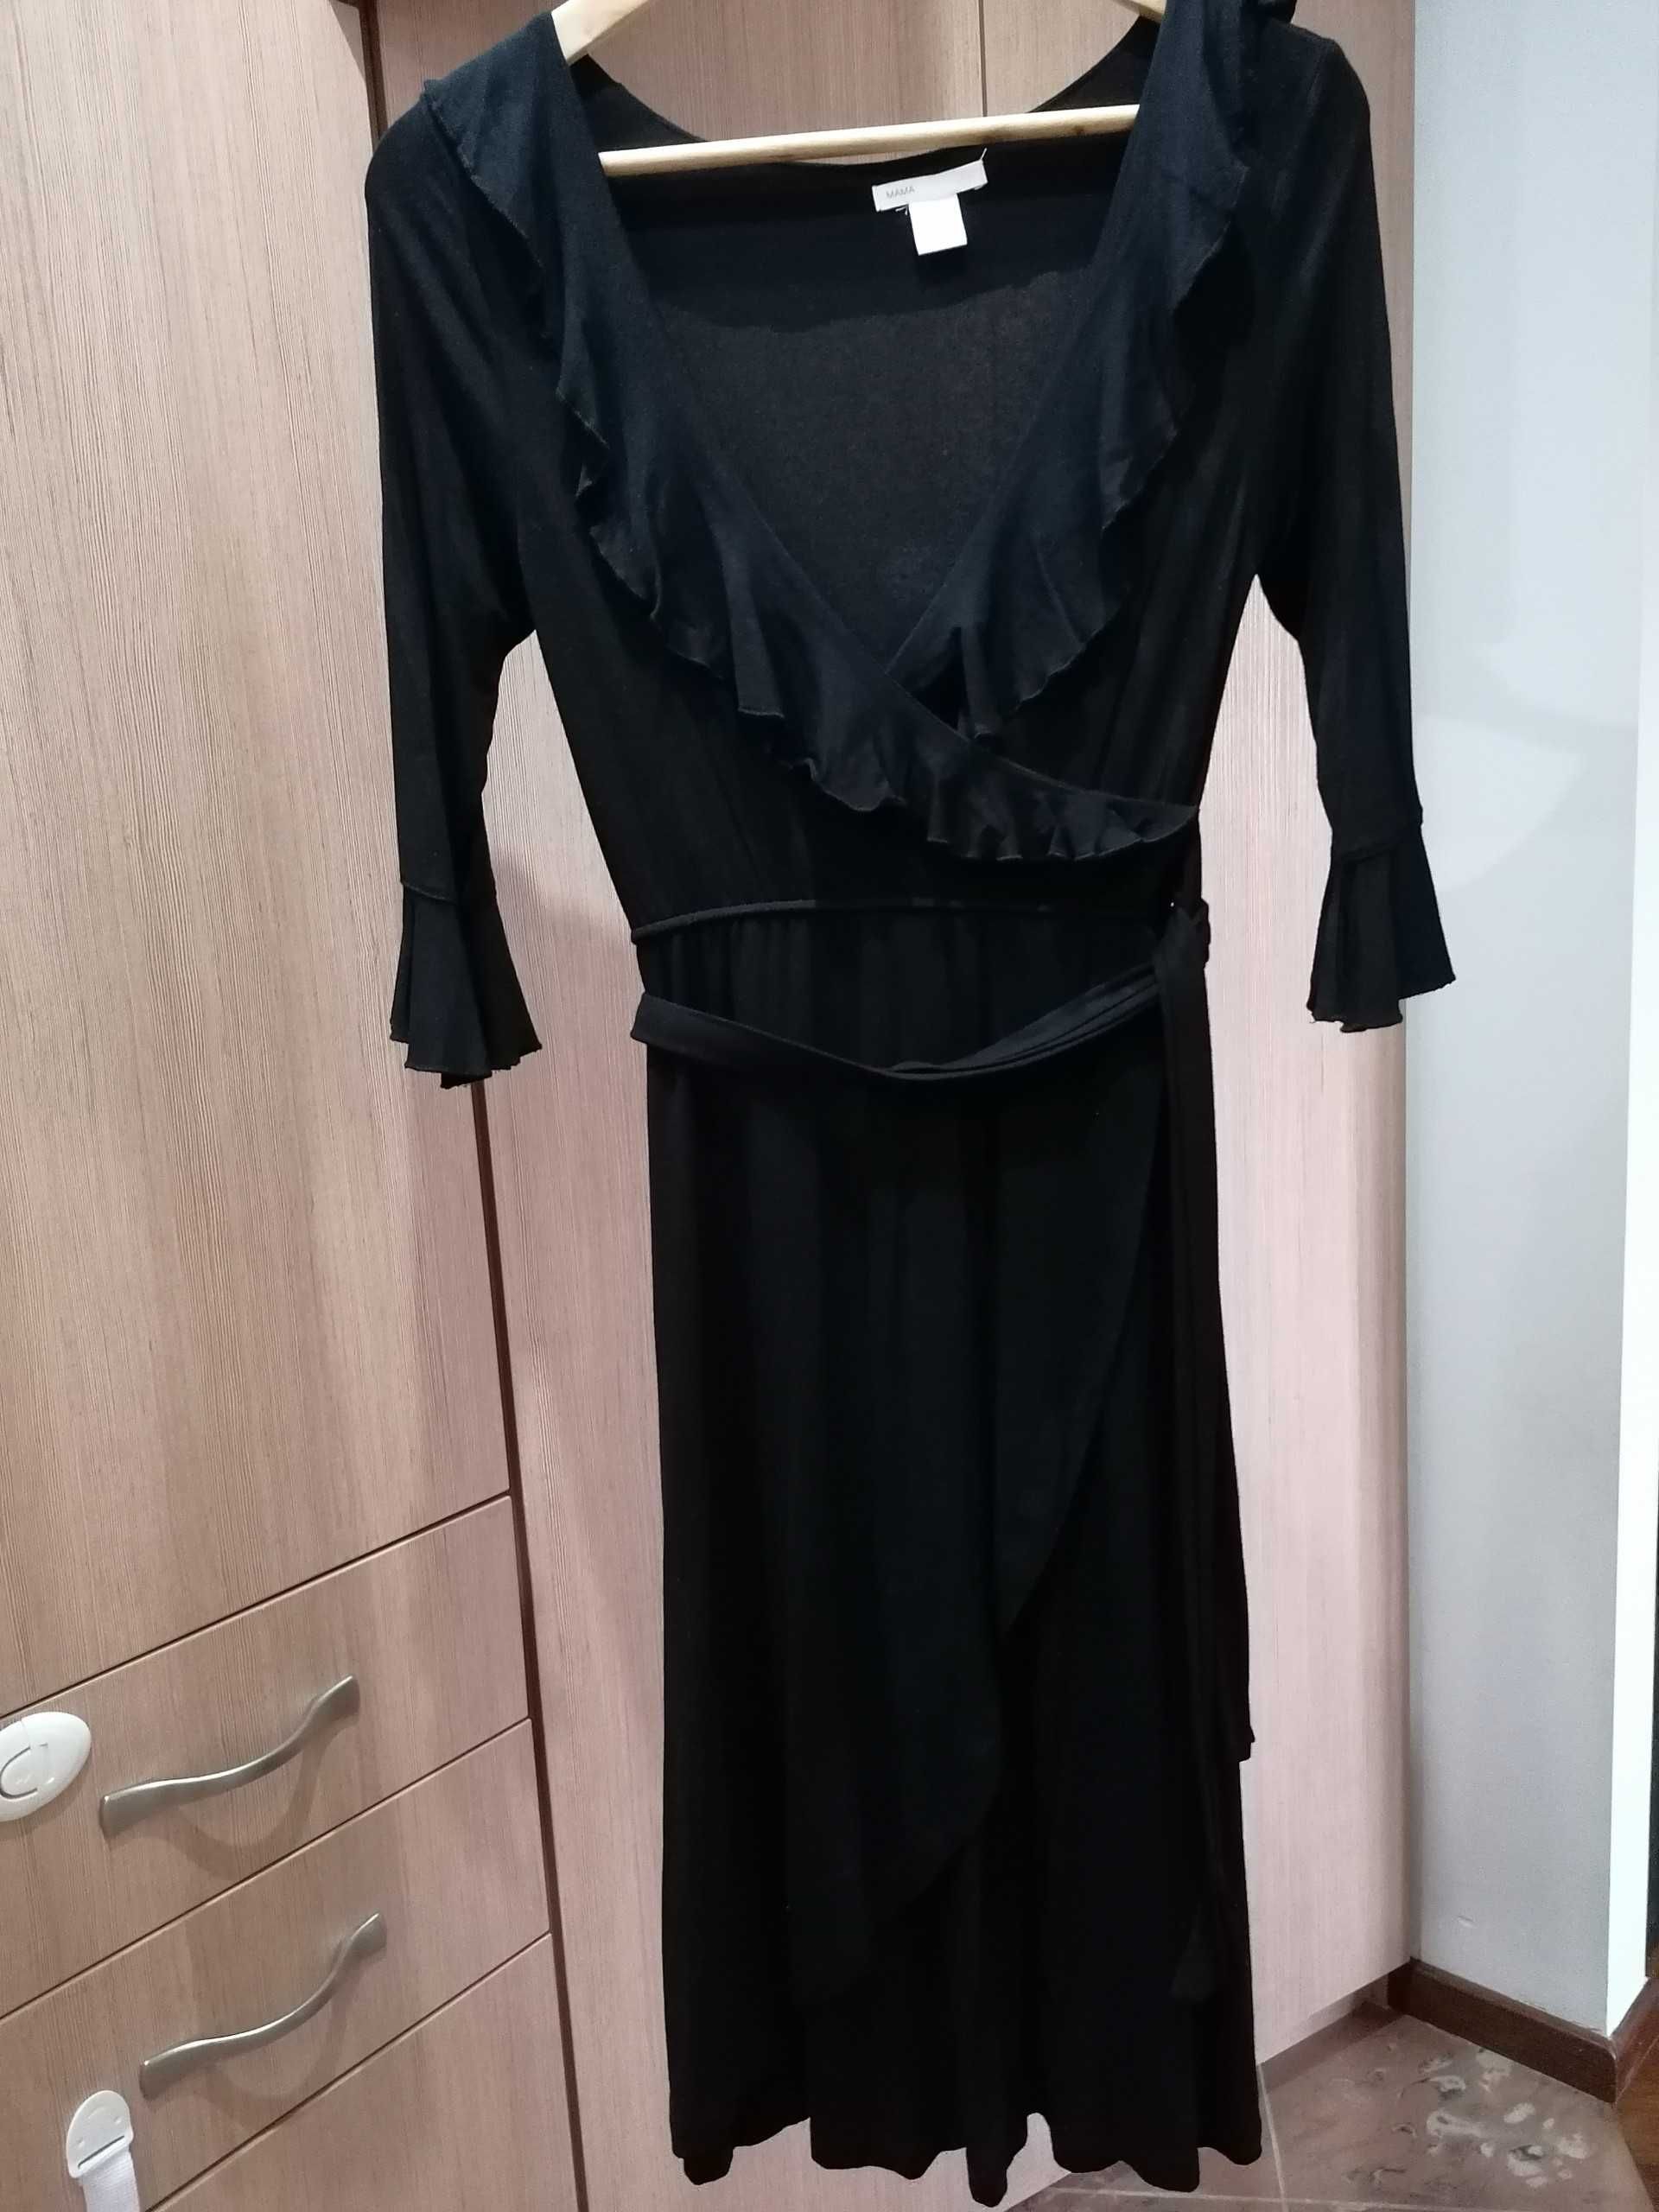 Czarna sukienka ciążowa H&M gratis rajstopy ciążowe